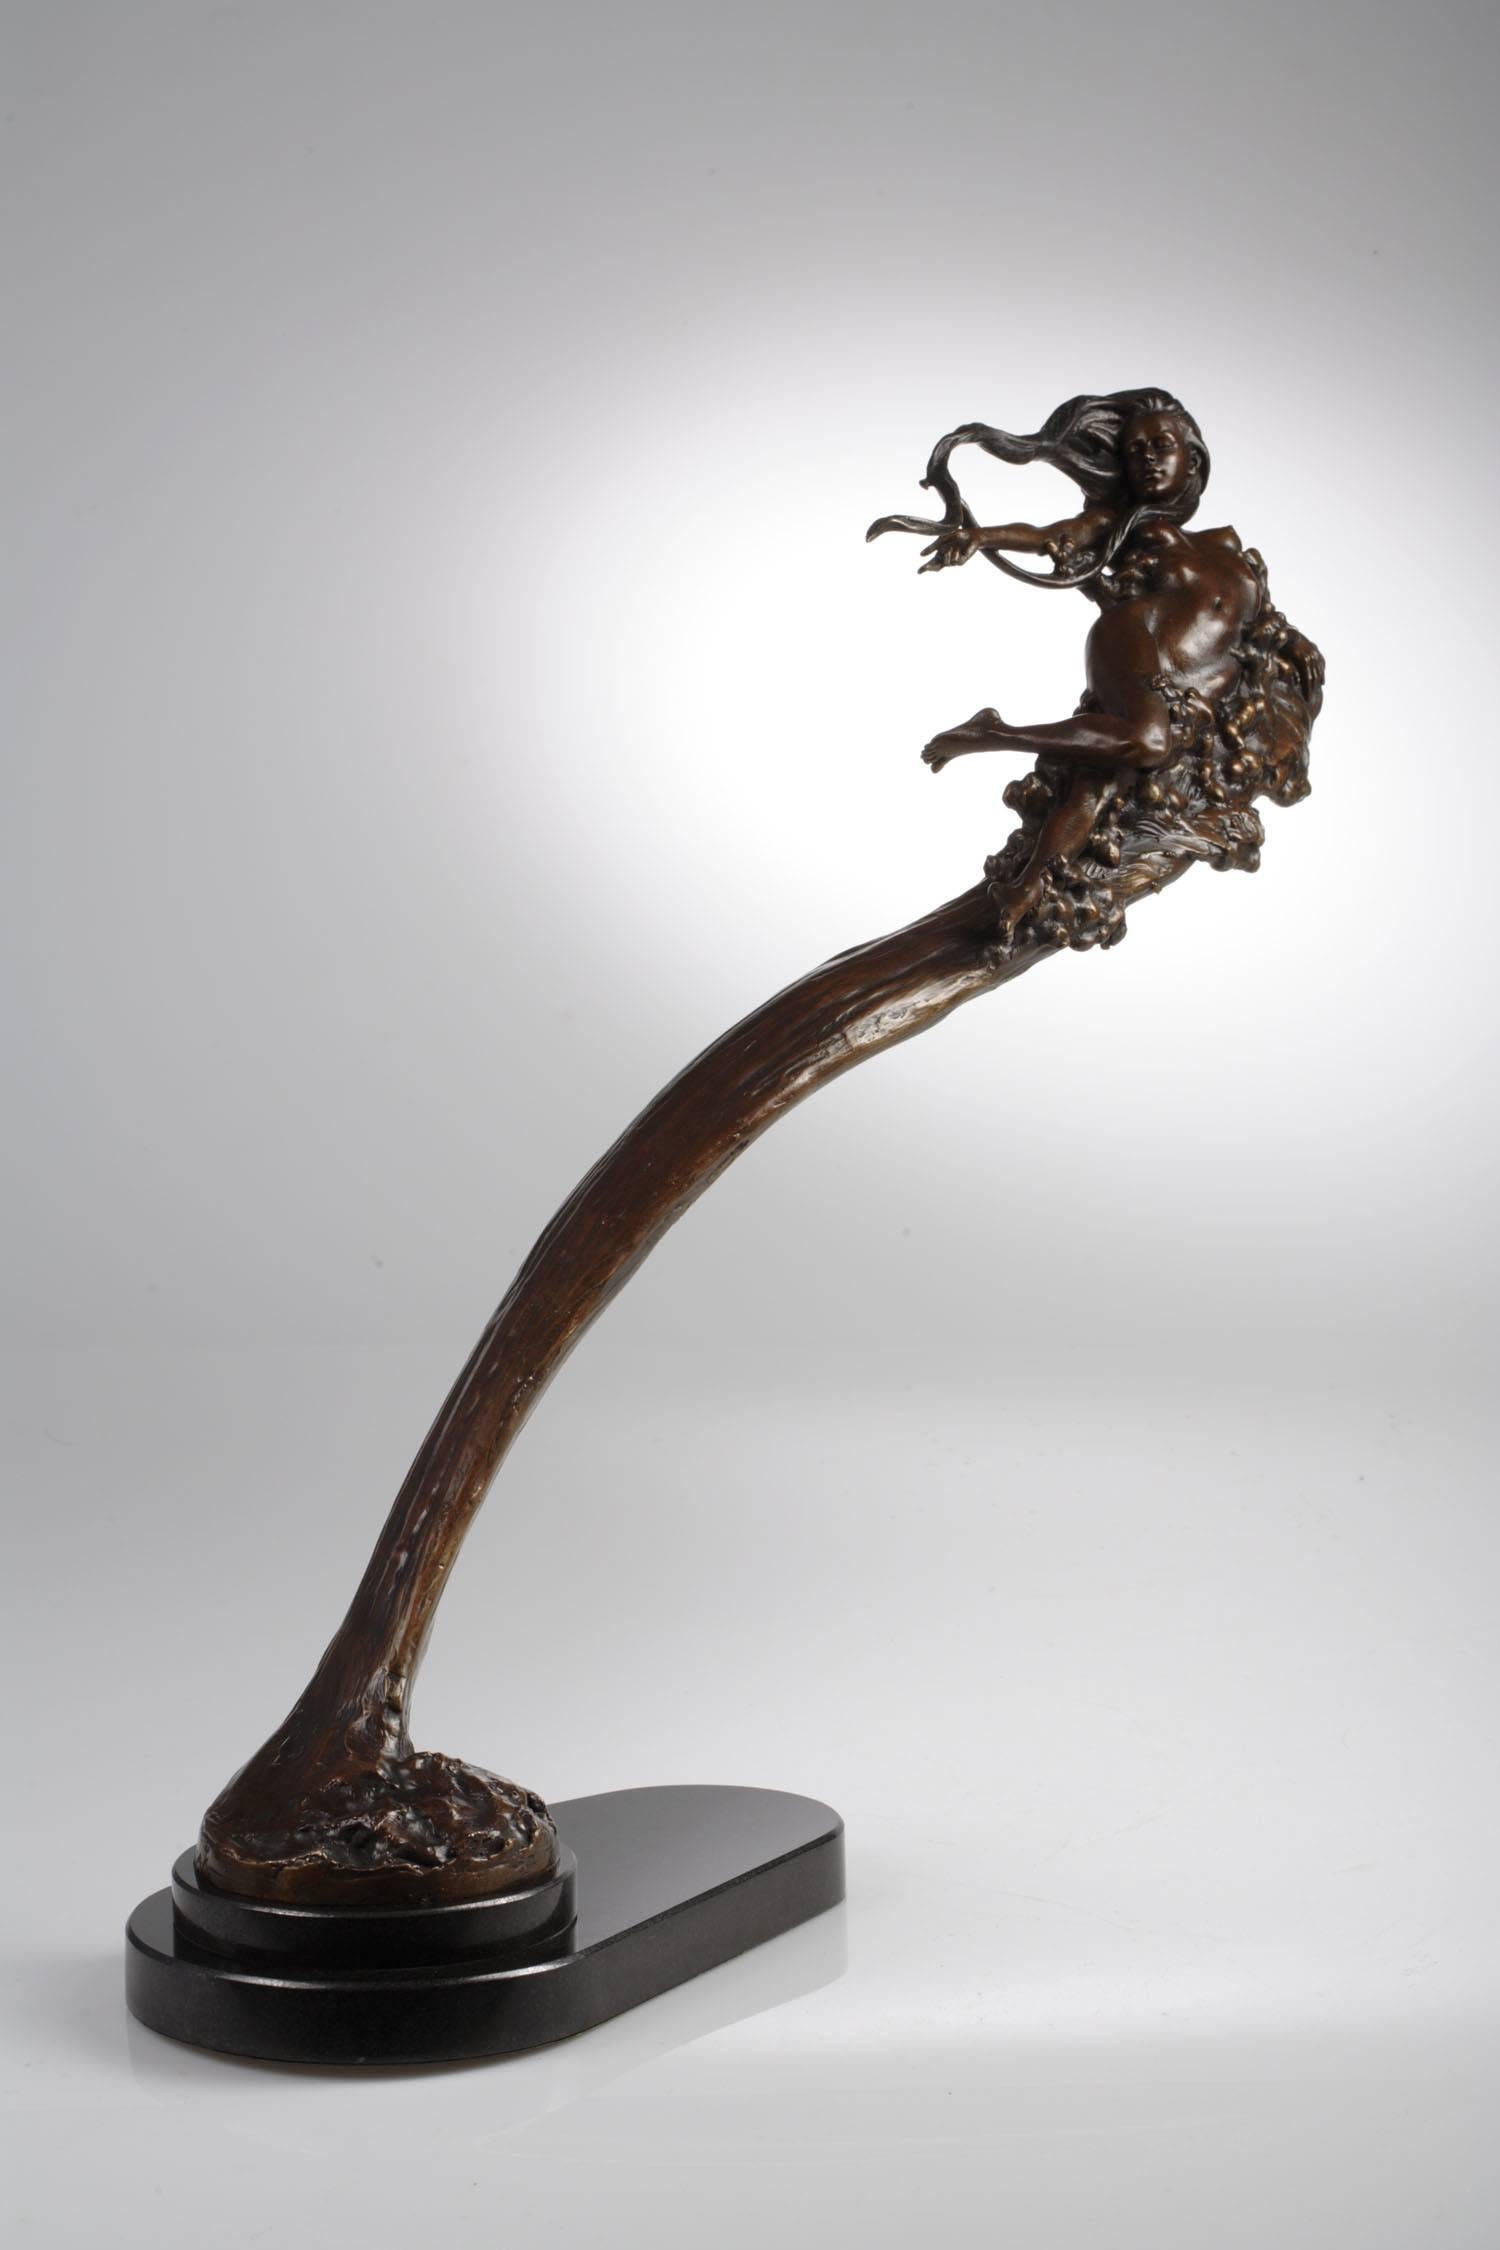 morning Glory" de Carl Payne est une magnifique sculpture figurative en bronze, qui fait partie d'une série d'œuvres basées sur les mythes grecs. 

Poursuivant une carrière réussie en Angleterre et en Irlande, Carl a rejoint Callaghan Fine Paintings